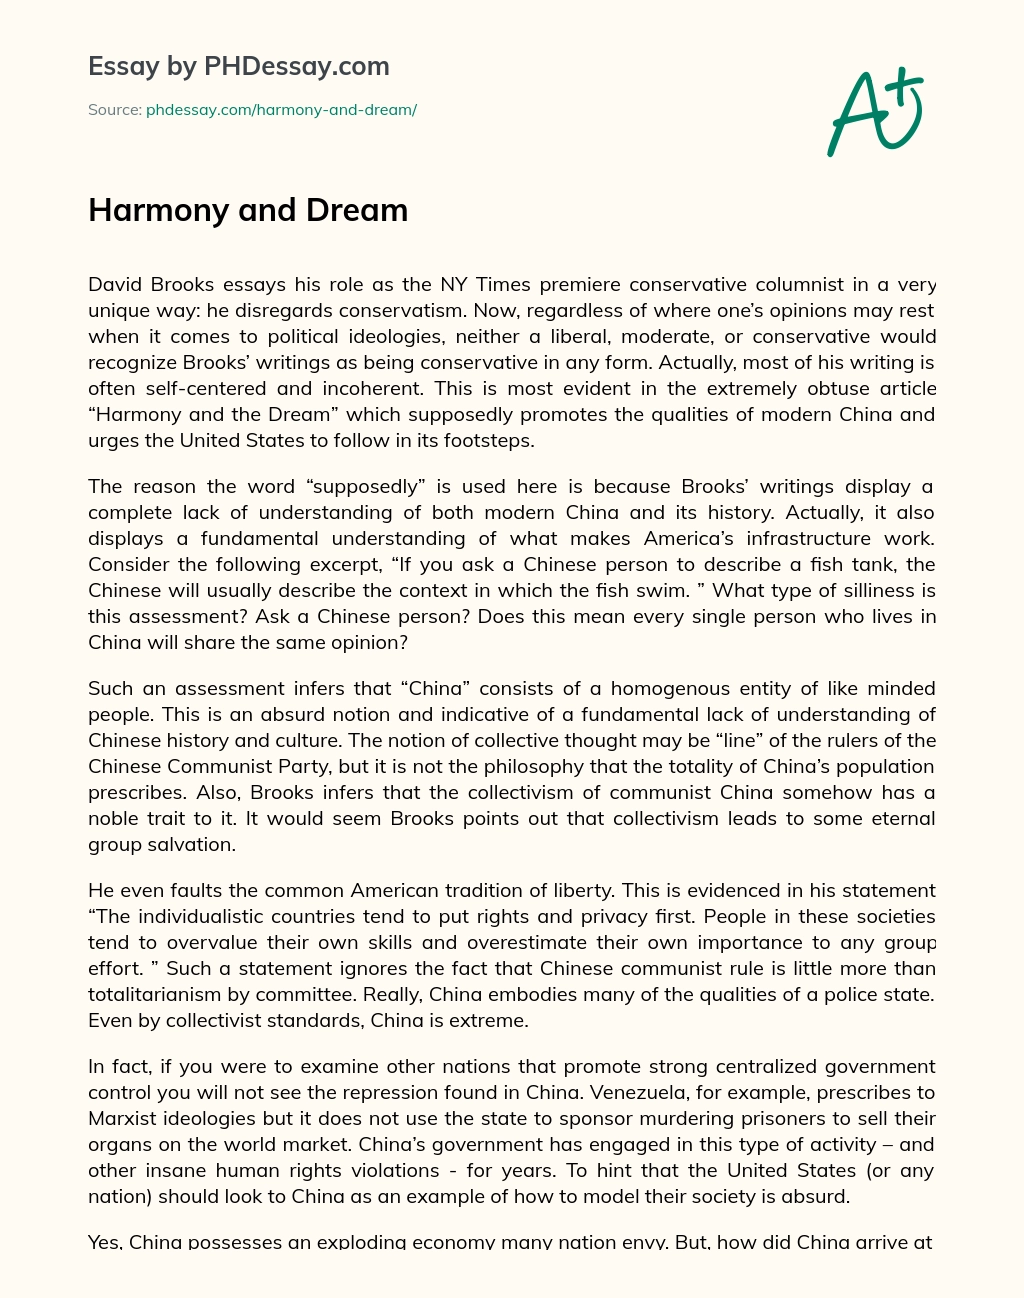 Harmony and Dream essay